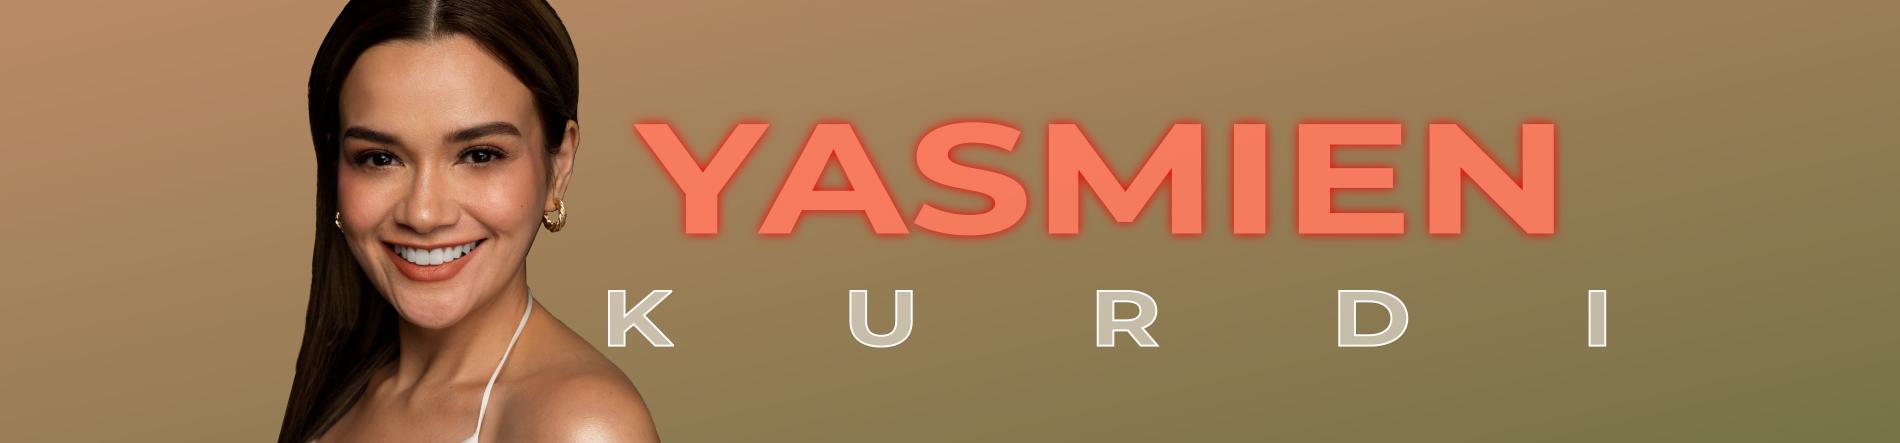 Yasmien Kurdi Desktop Banner